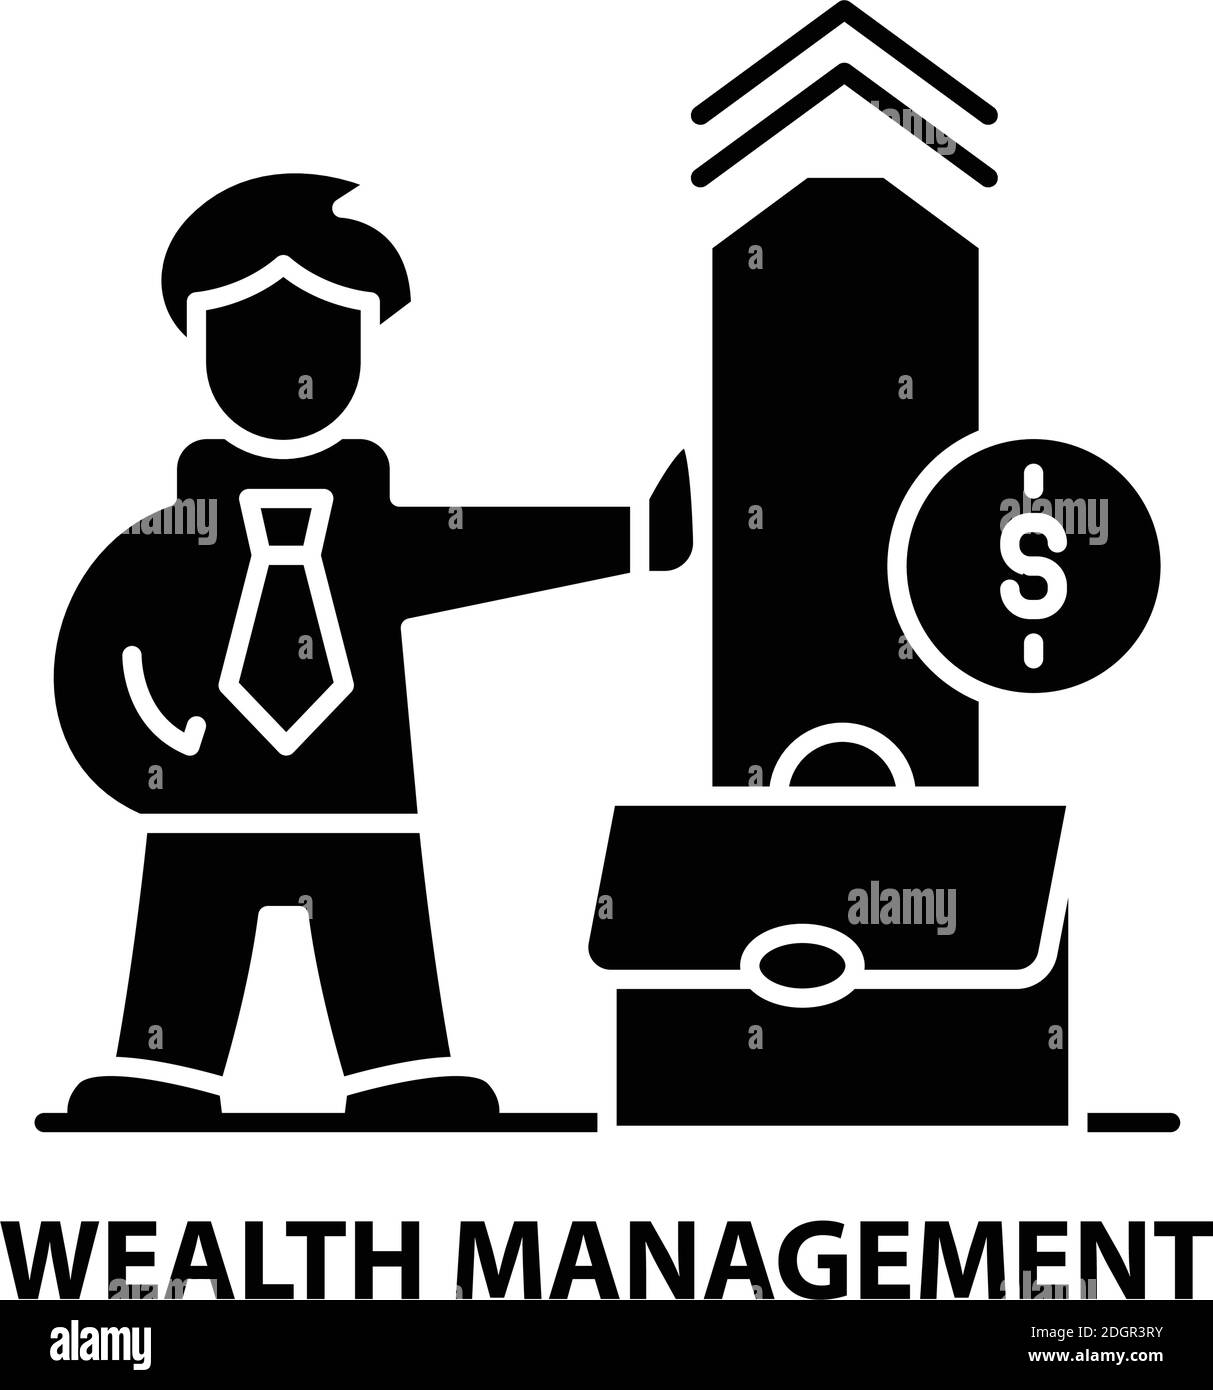 icona simbolo di gestione patrimoniale, segno vettoriale nero con tratti modificabili, illustrazione concettuale Illustrazione Vettoriale